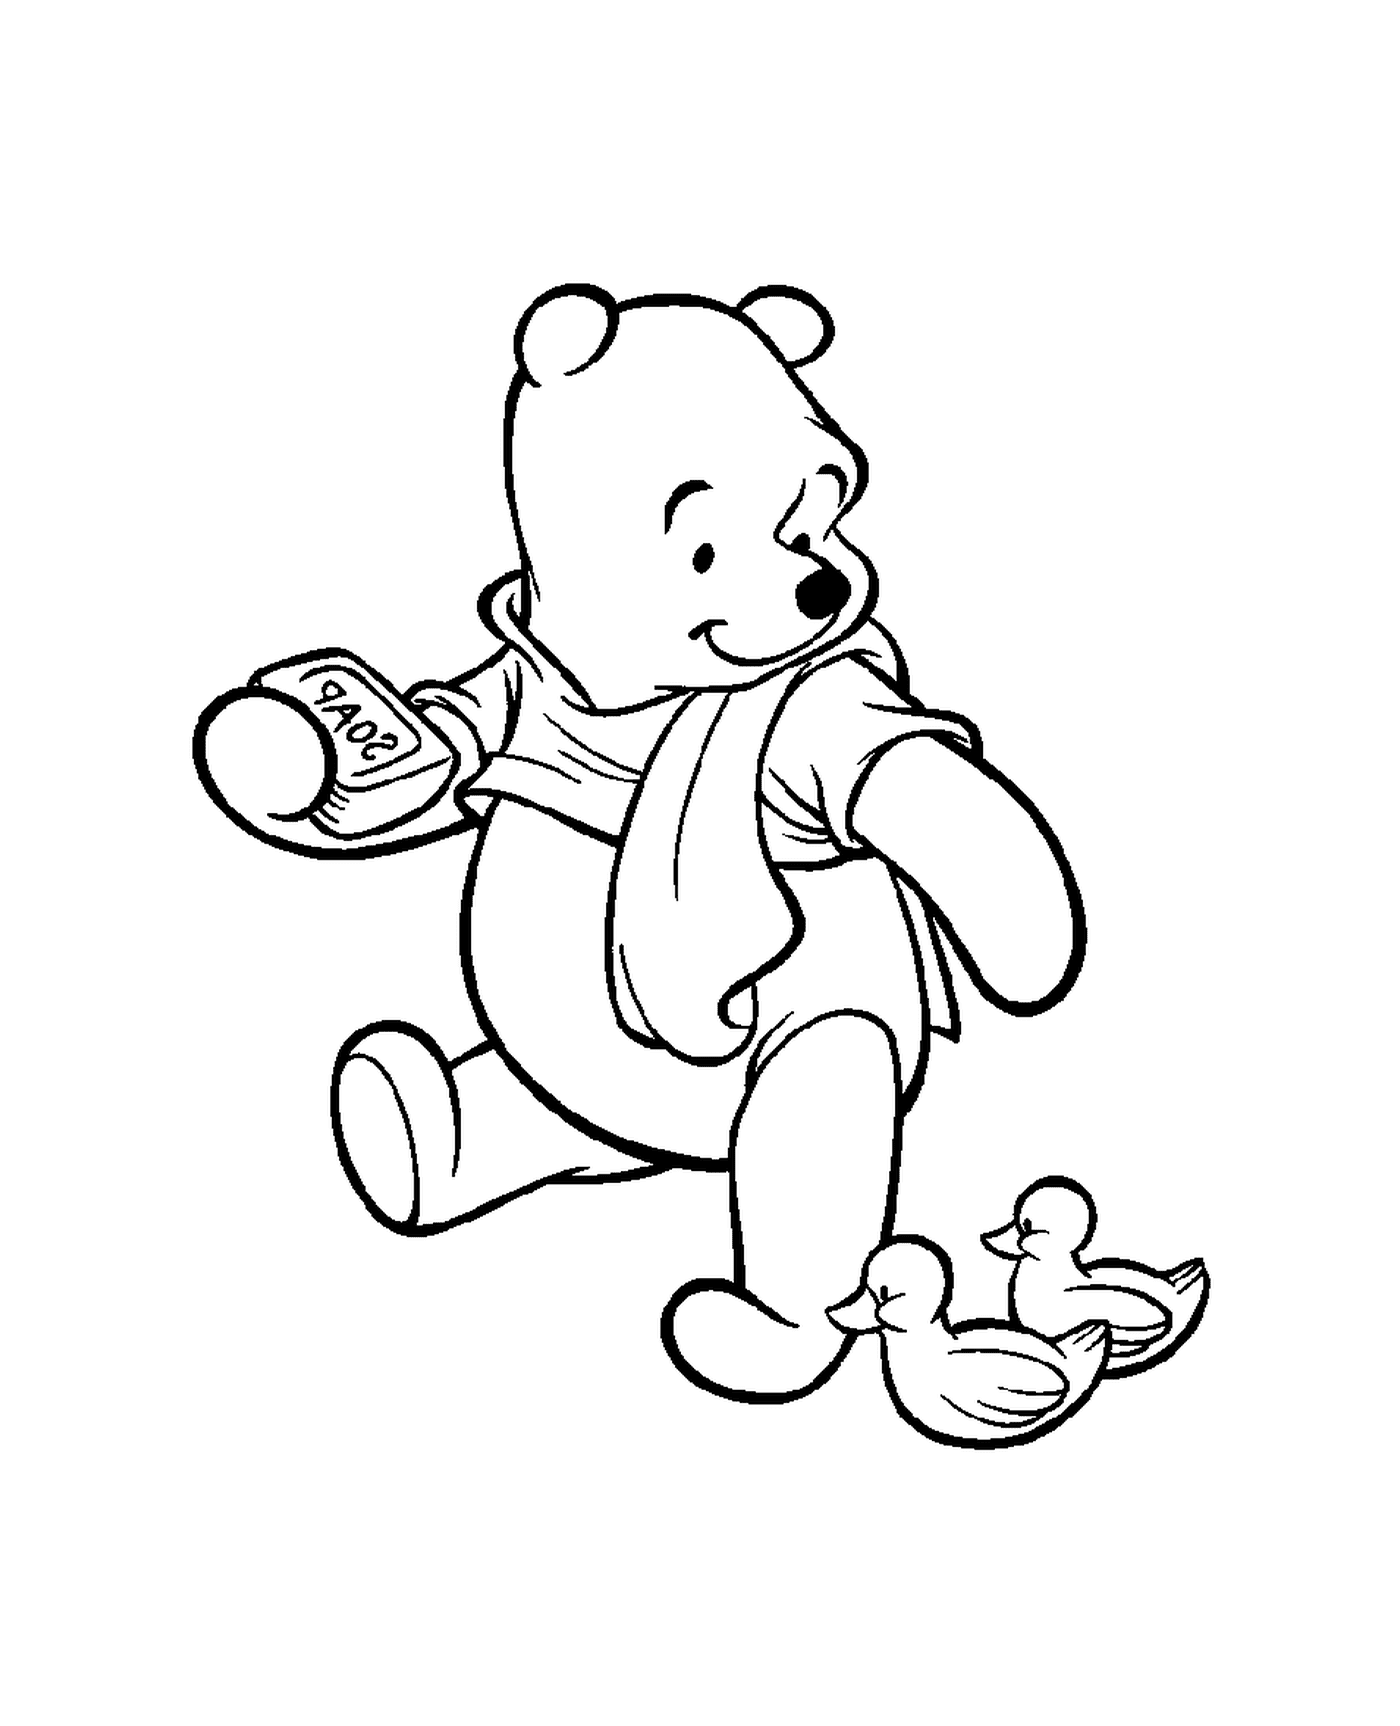  Winnie el oso toma su baño 